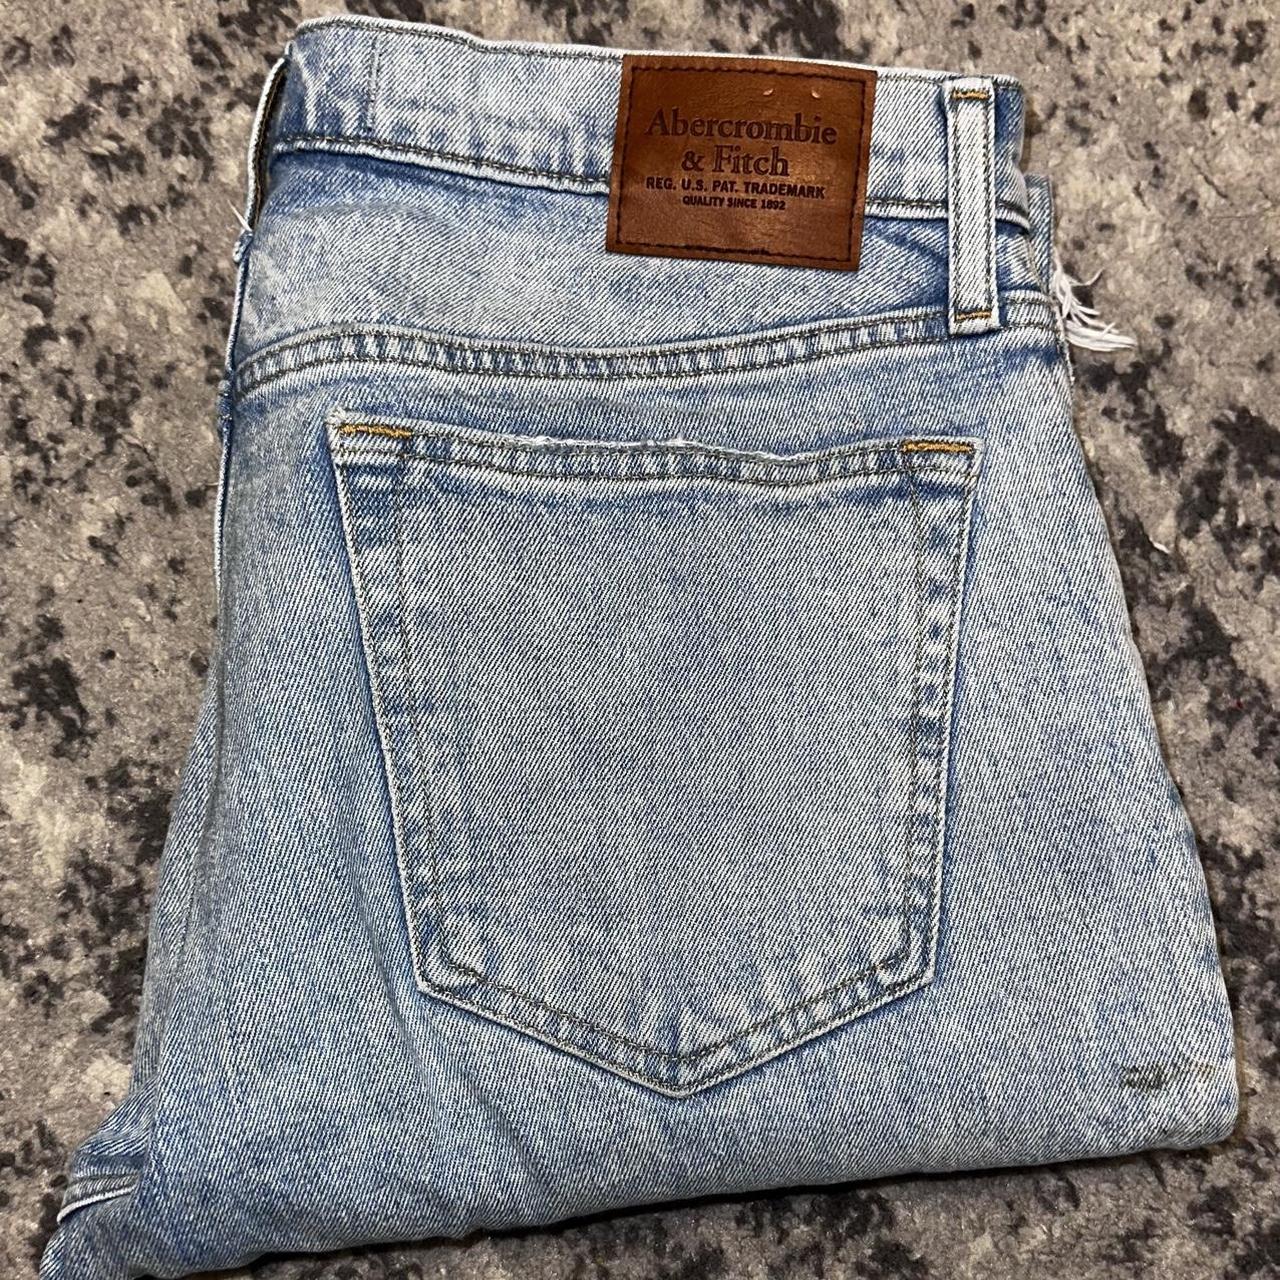 Abercrombie “Vintage” Jeans - 32x34 - Depop